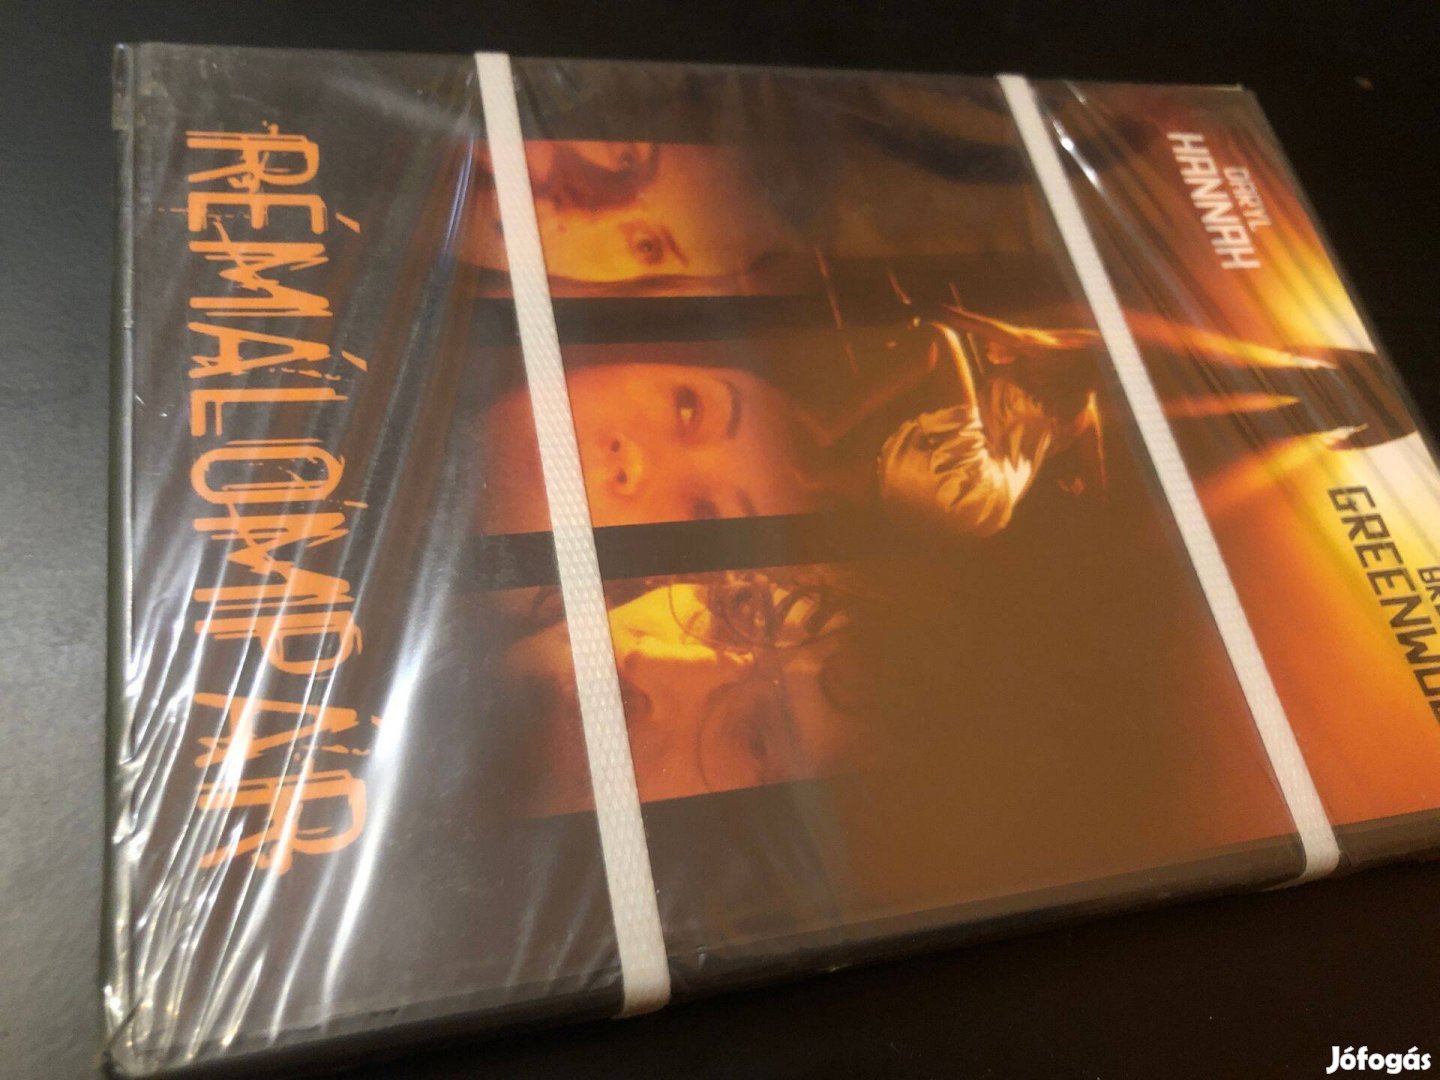 Rémálompár DVD (vadonatúj, bontatlan, ritkaság, Daryl Hannah)